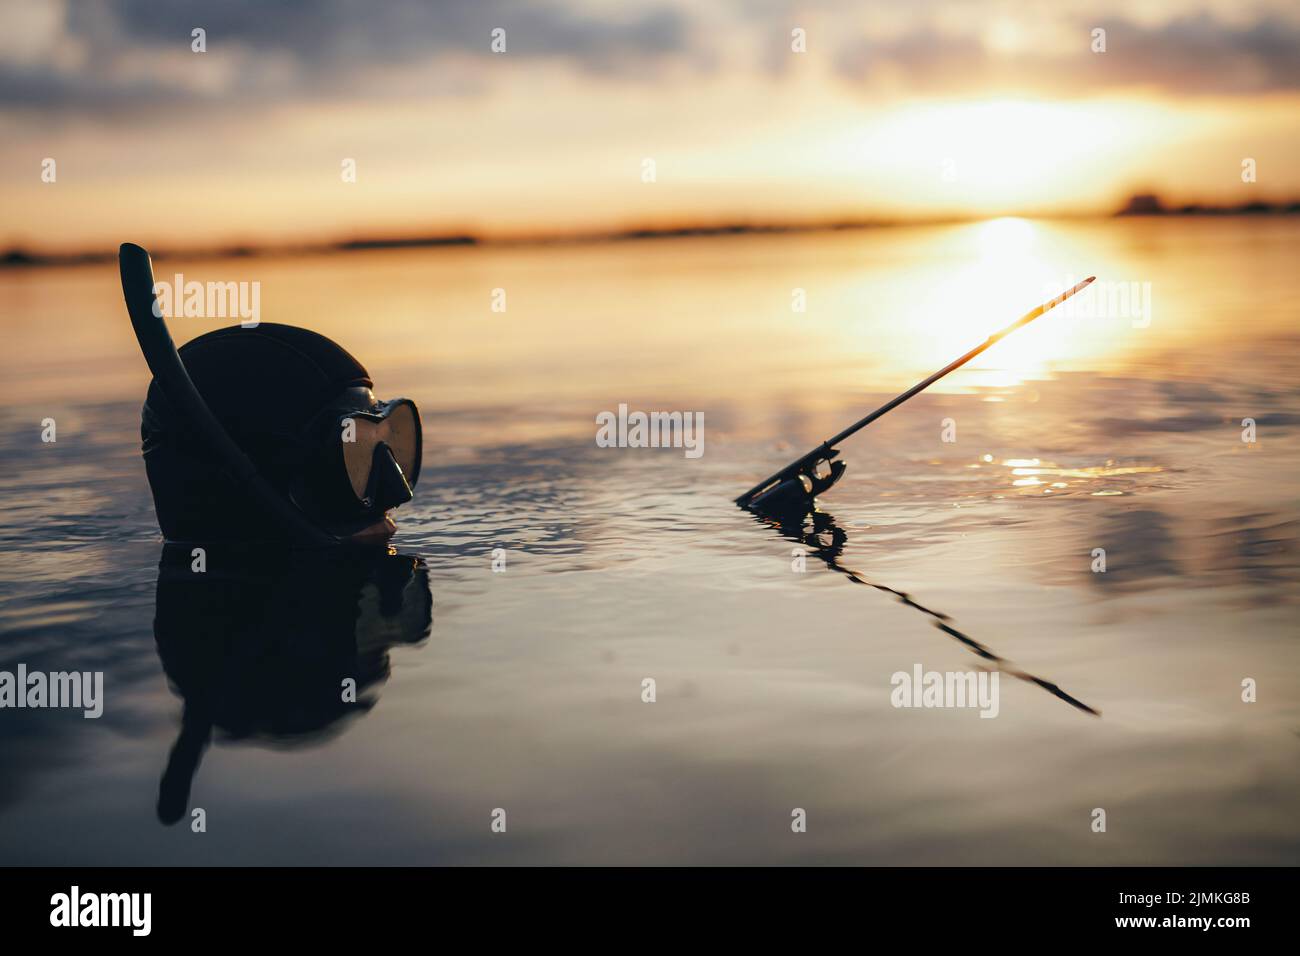 Speerfischertaucher mit einer Speergun, während er bei Sonnenuntergang in Meerwasser getaucht ist. Abenteuerlicher Taucher, der mitten im Meer nach Fischen jagt. Stockfoto